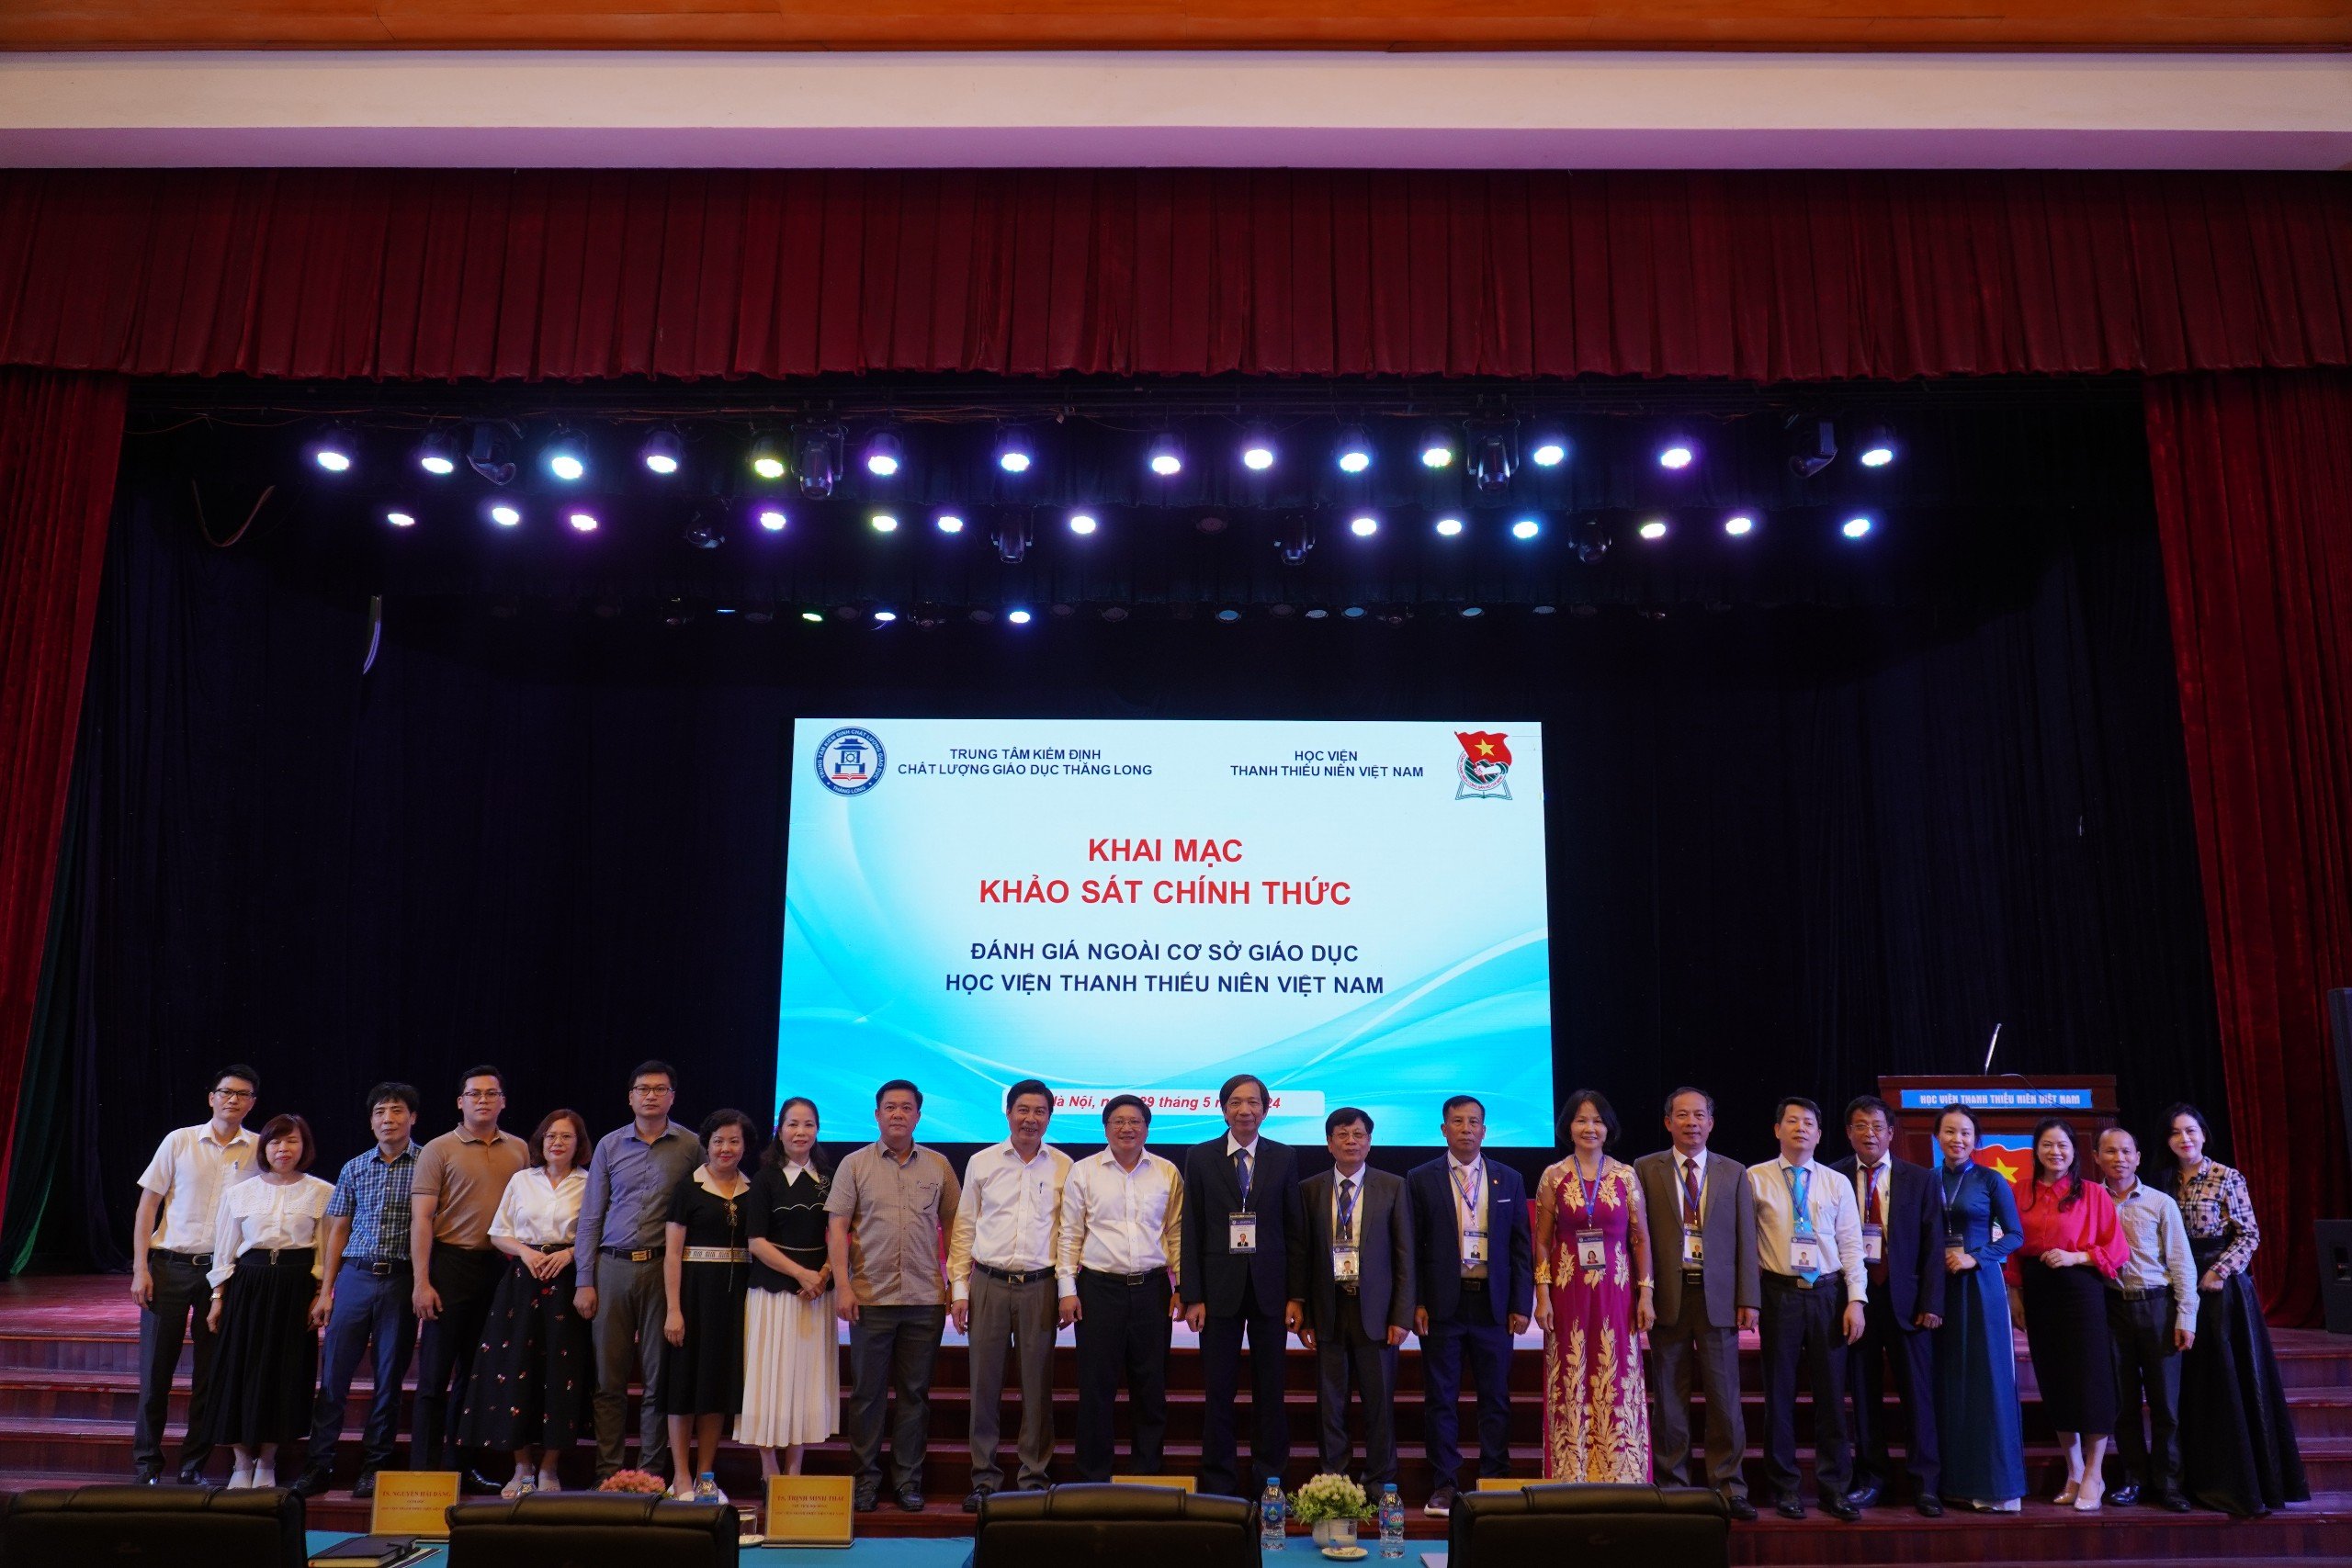 Khai mạc đợt khảo sát chính thức đánh giá ngoài chất lượng giáo dục tại Học viện Thanh thiếu niên Việt Nam